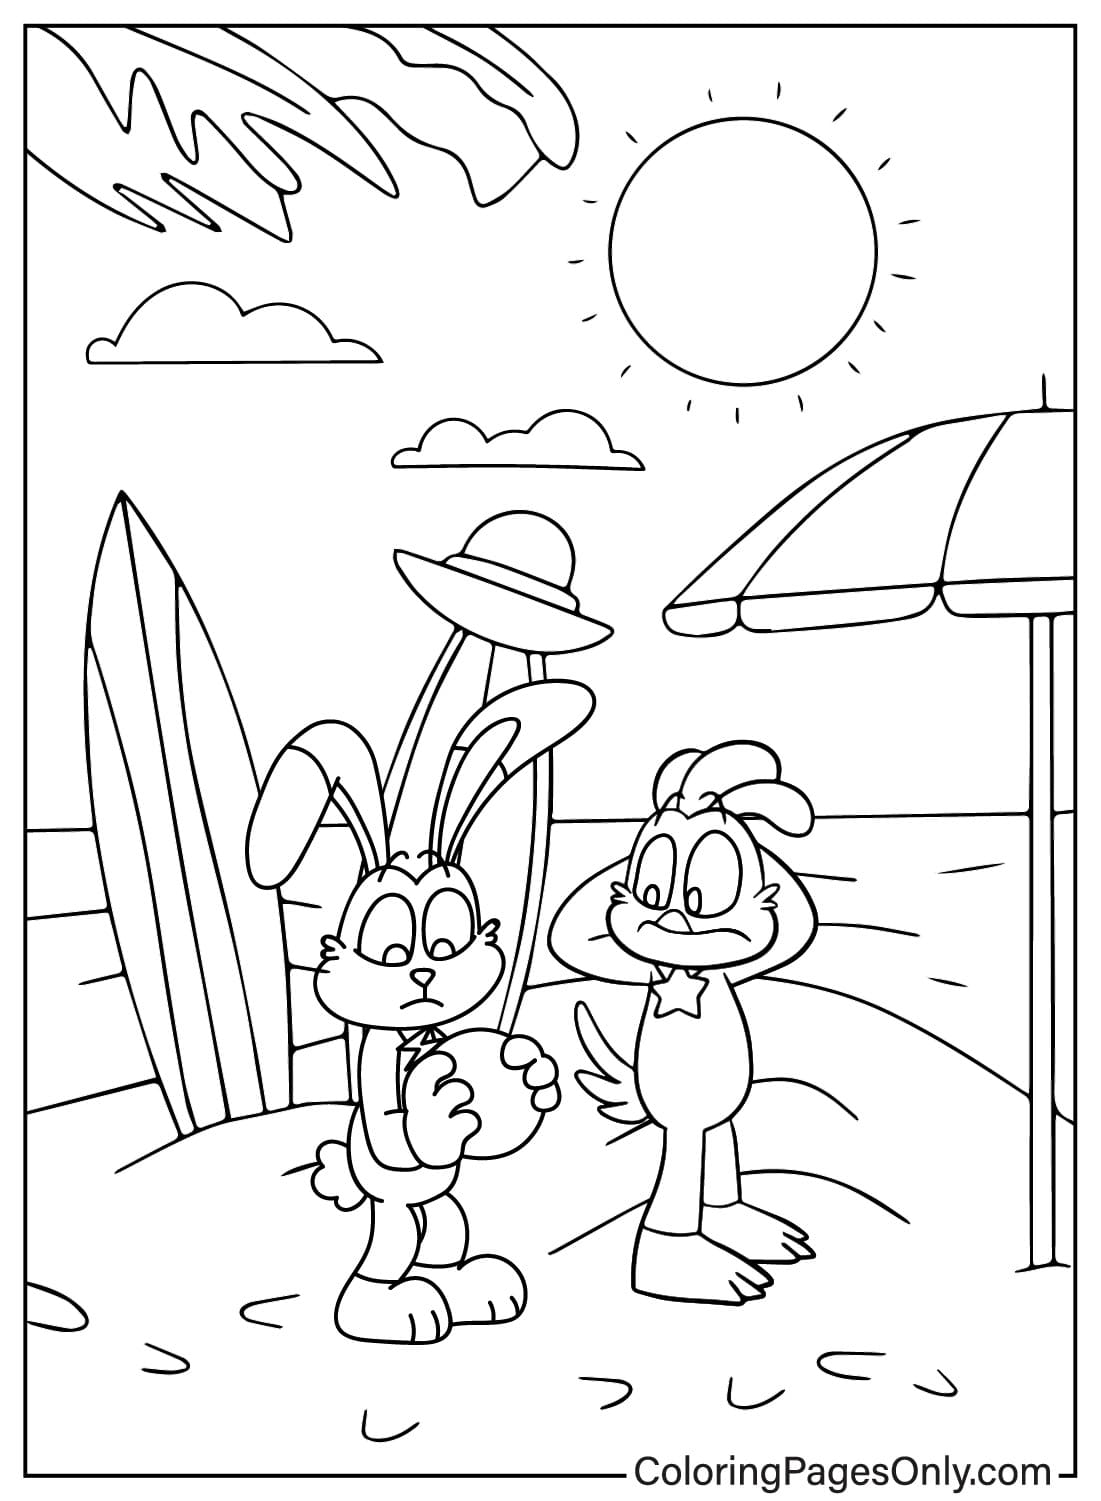 Página para colorear de Hoppy Rayuela y KickinChicken en la playa de Hoppy Rayuela